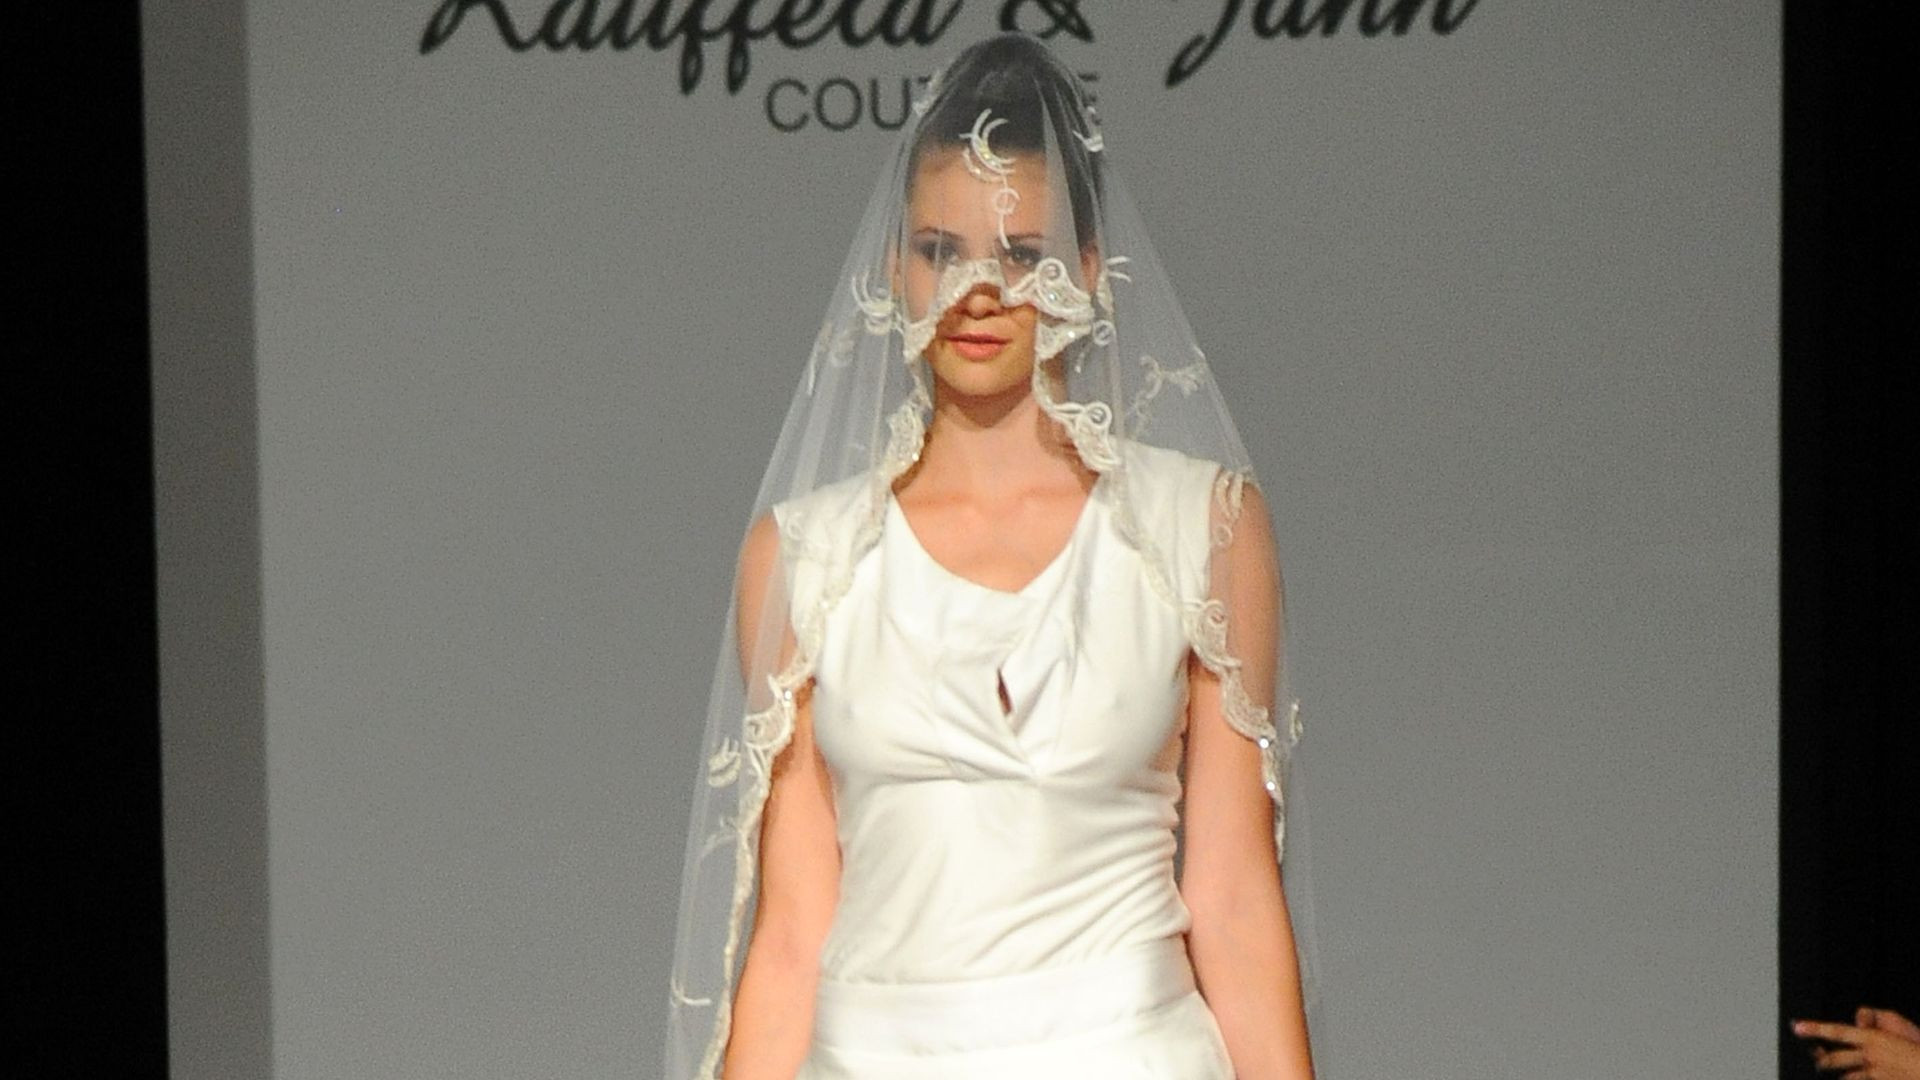 Betty Taube Hochzeitskleid
 Betty Taube im Hochzeitsfieber So sieht ihr Brautkleid